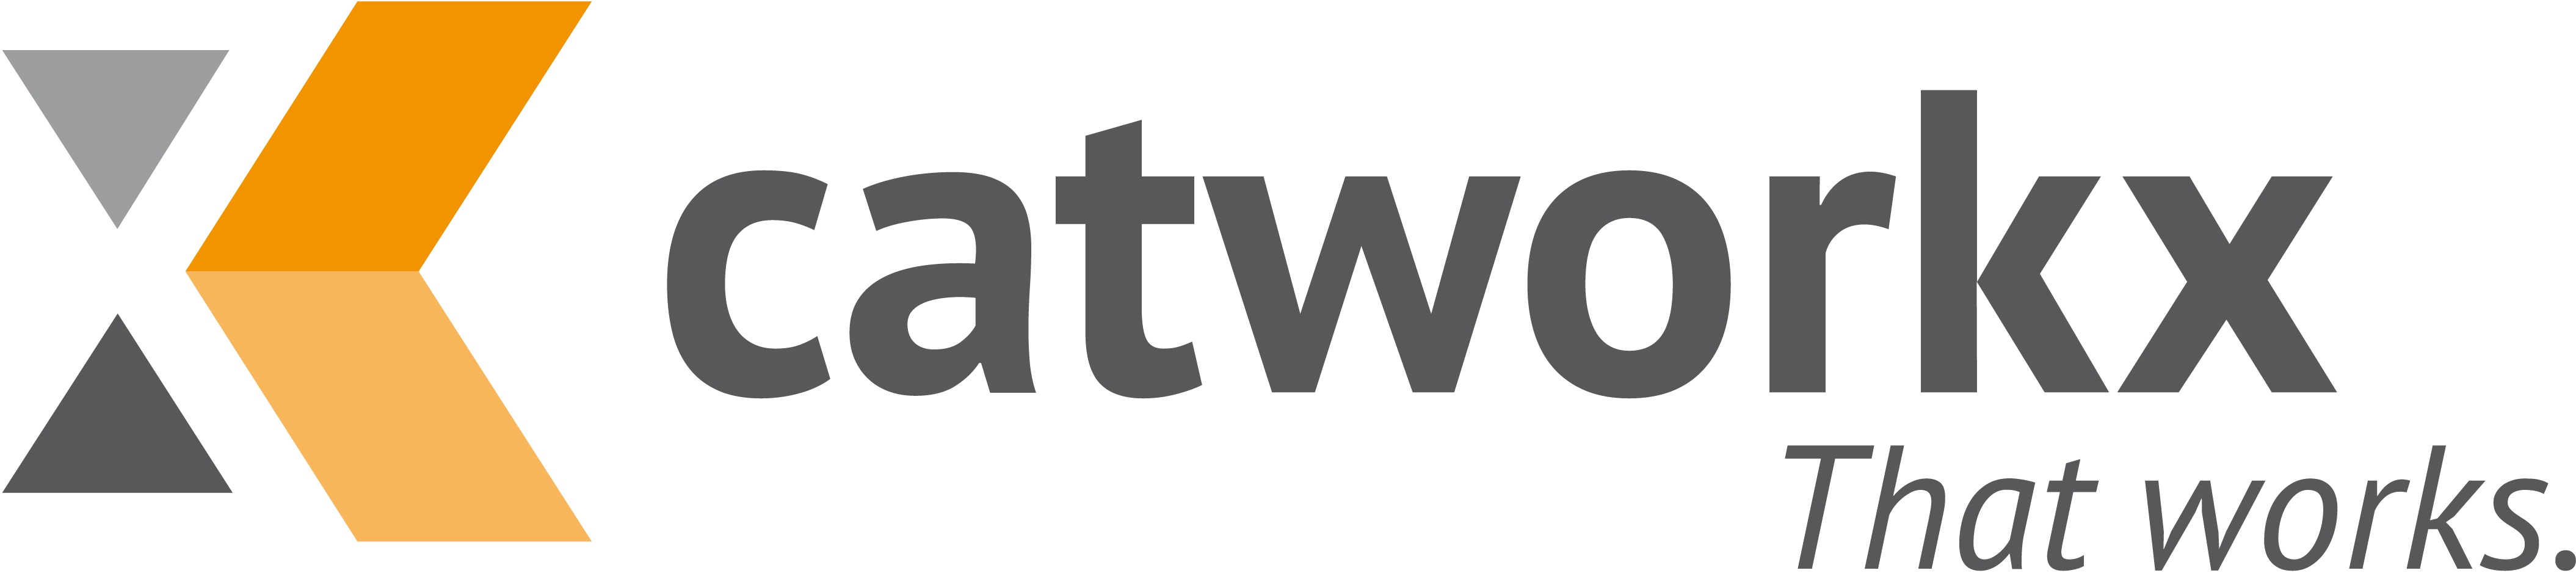 Logotipo de catworkx